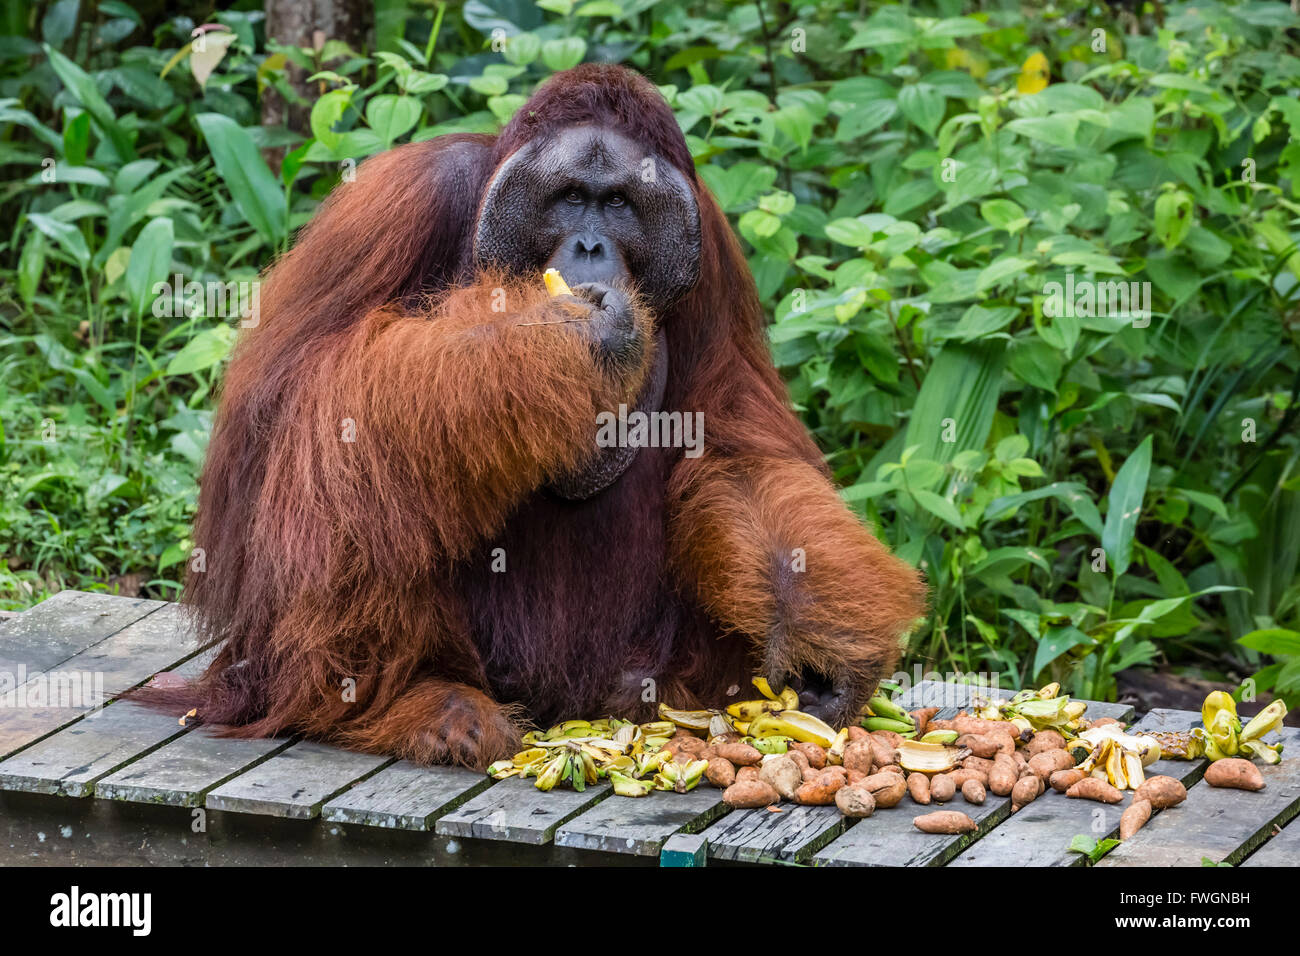 Orang-outan mâle (Pongo pygmaeus) joue avec un pad, Centre de réhabilitation de Semenggoh, Sarawak, Bornéo, Malaisie, Asie Banque D'Images